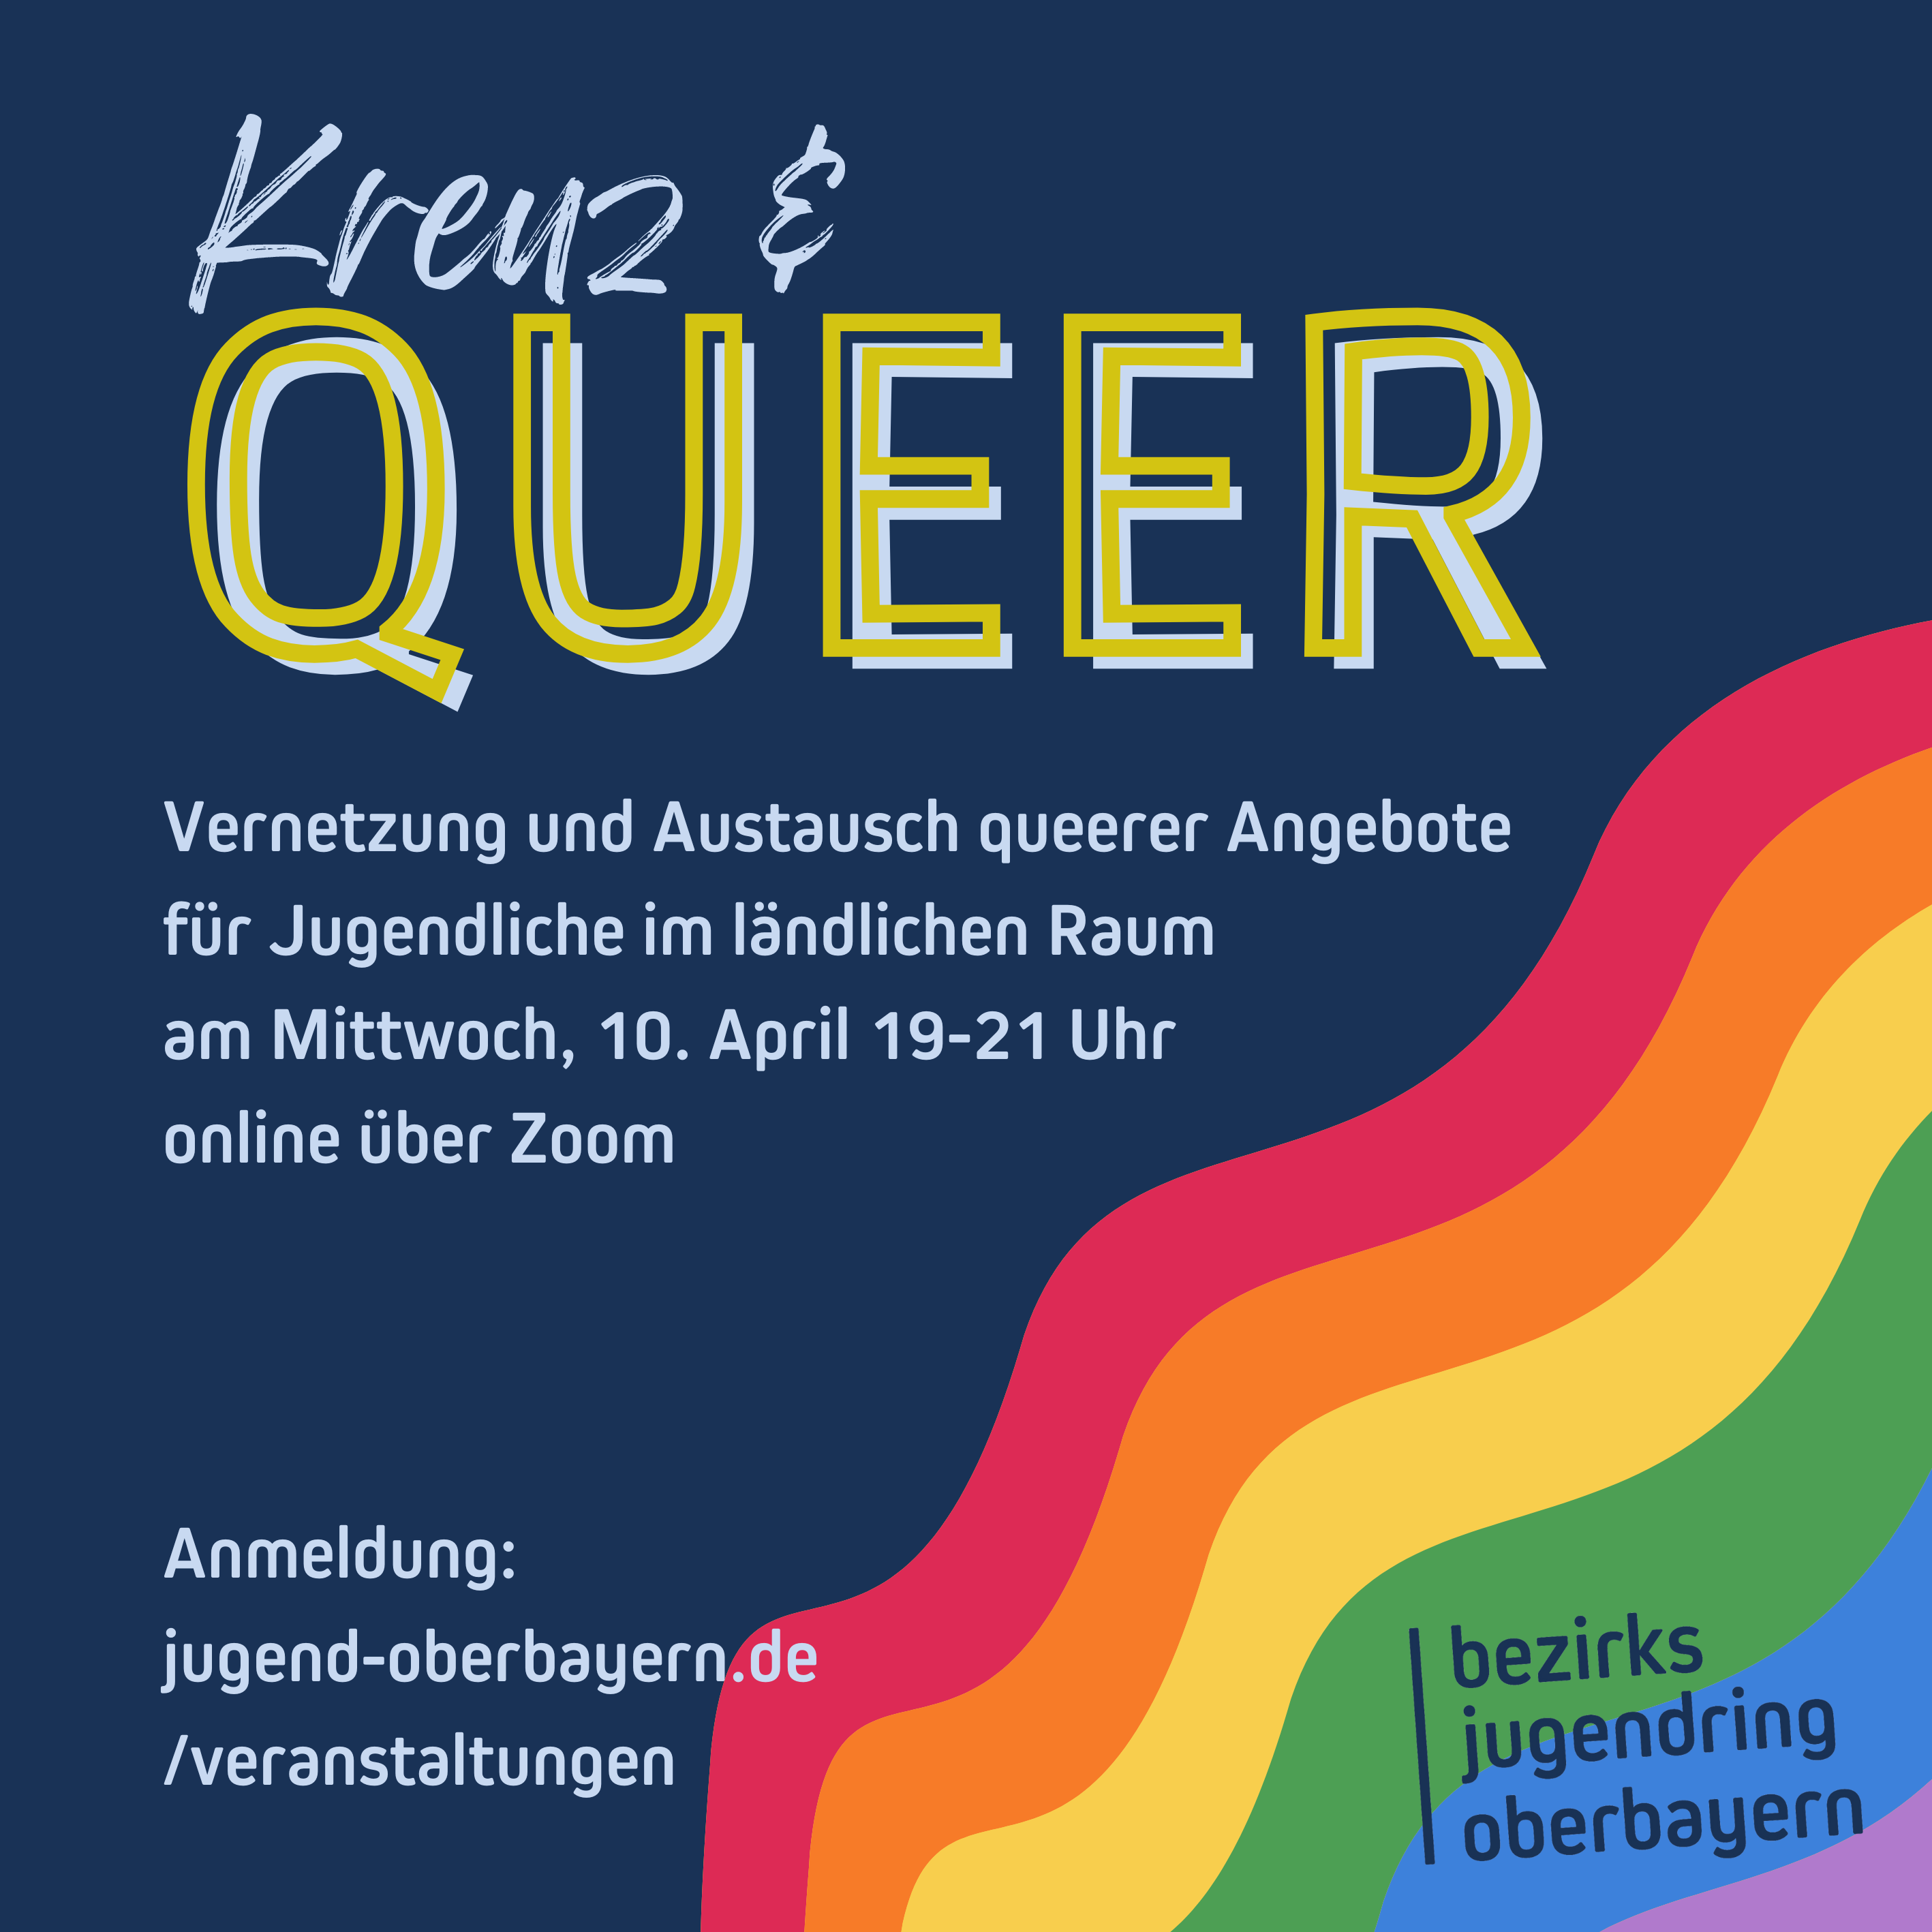 Auf dem Bild sieht man ein Sharepic mit Regenbogen und dem Titel Kreuz und Queer